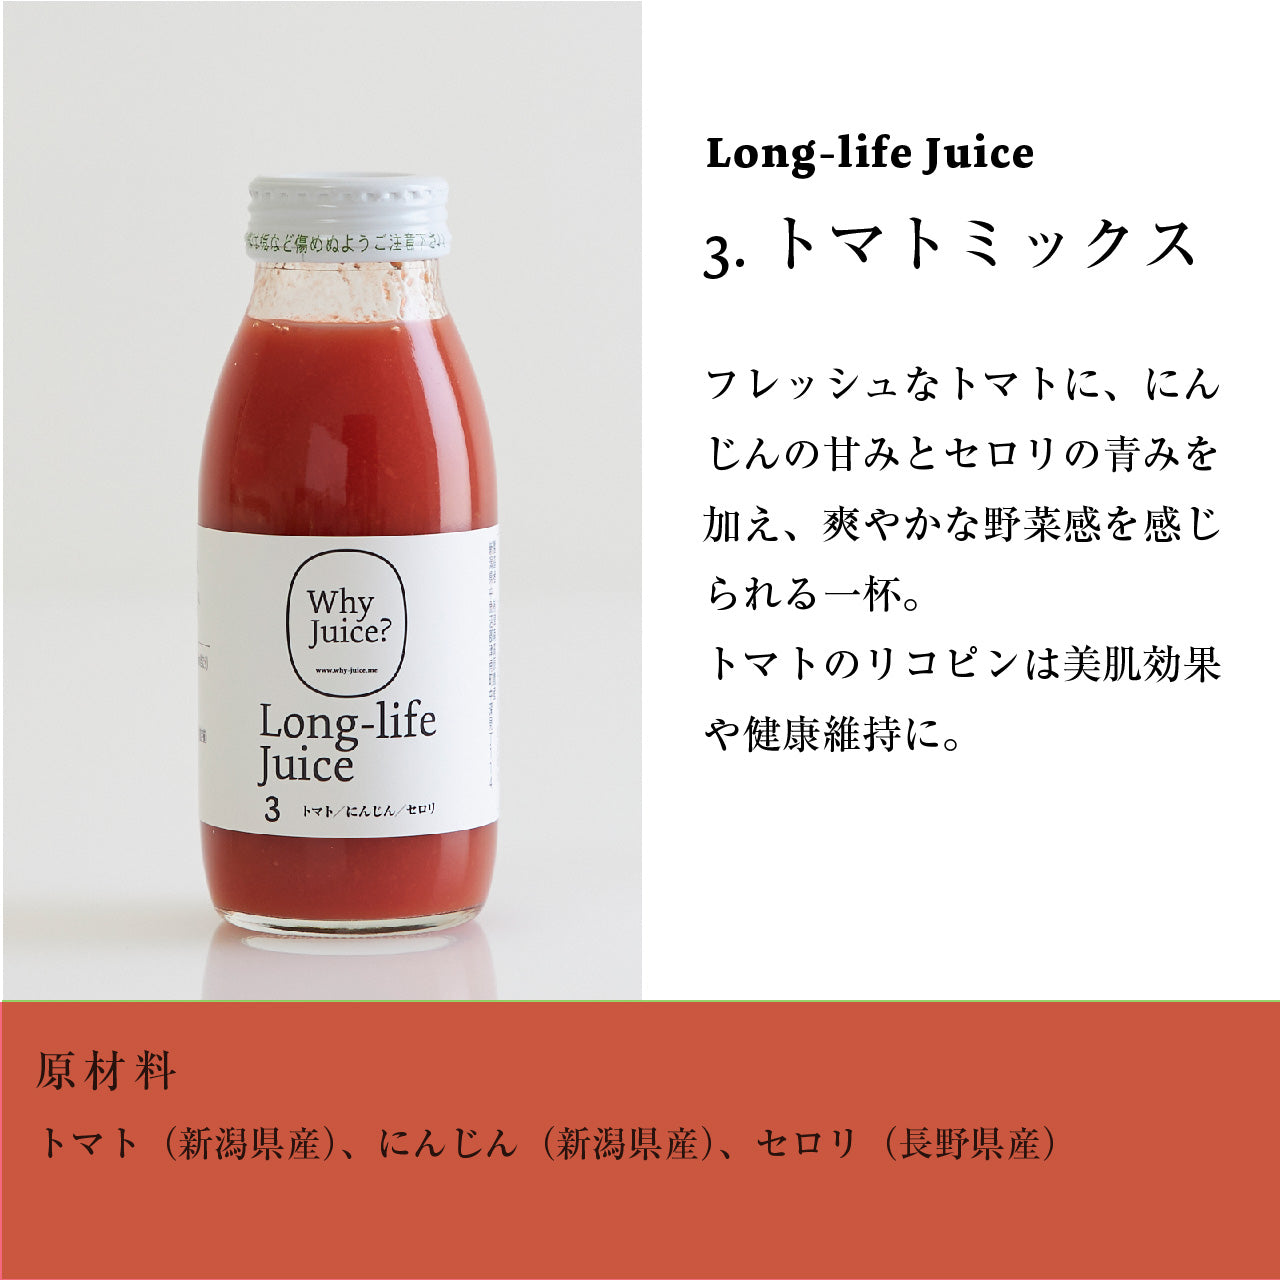 【初めてのWhy Juice?お試し】Long-life Juice3本セット